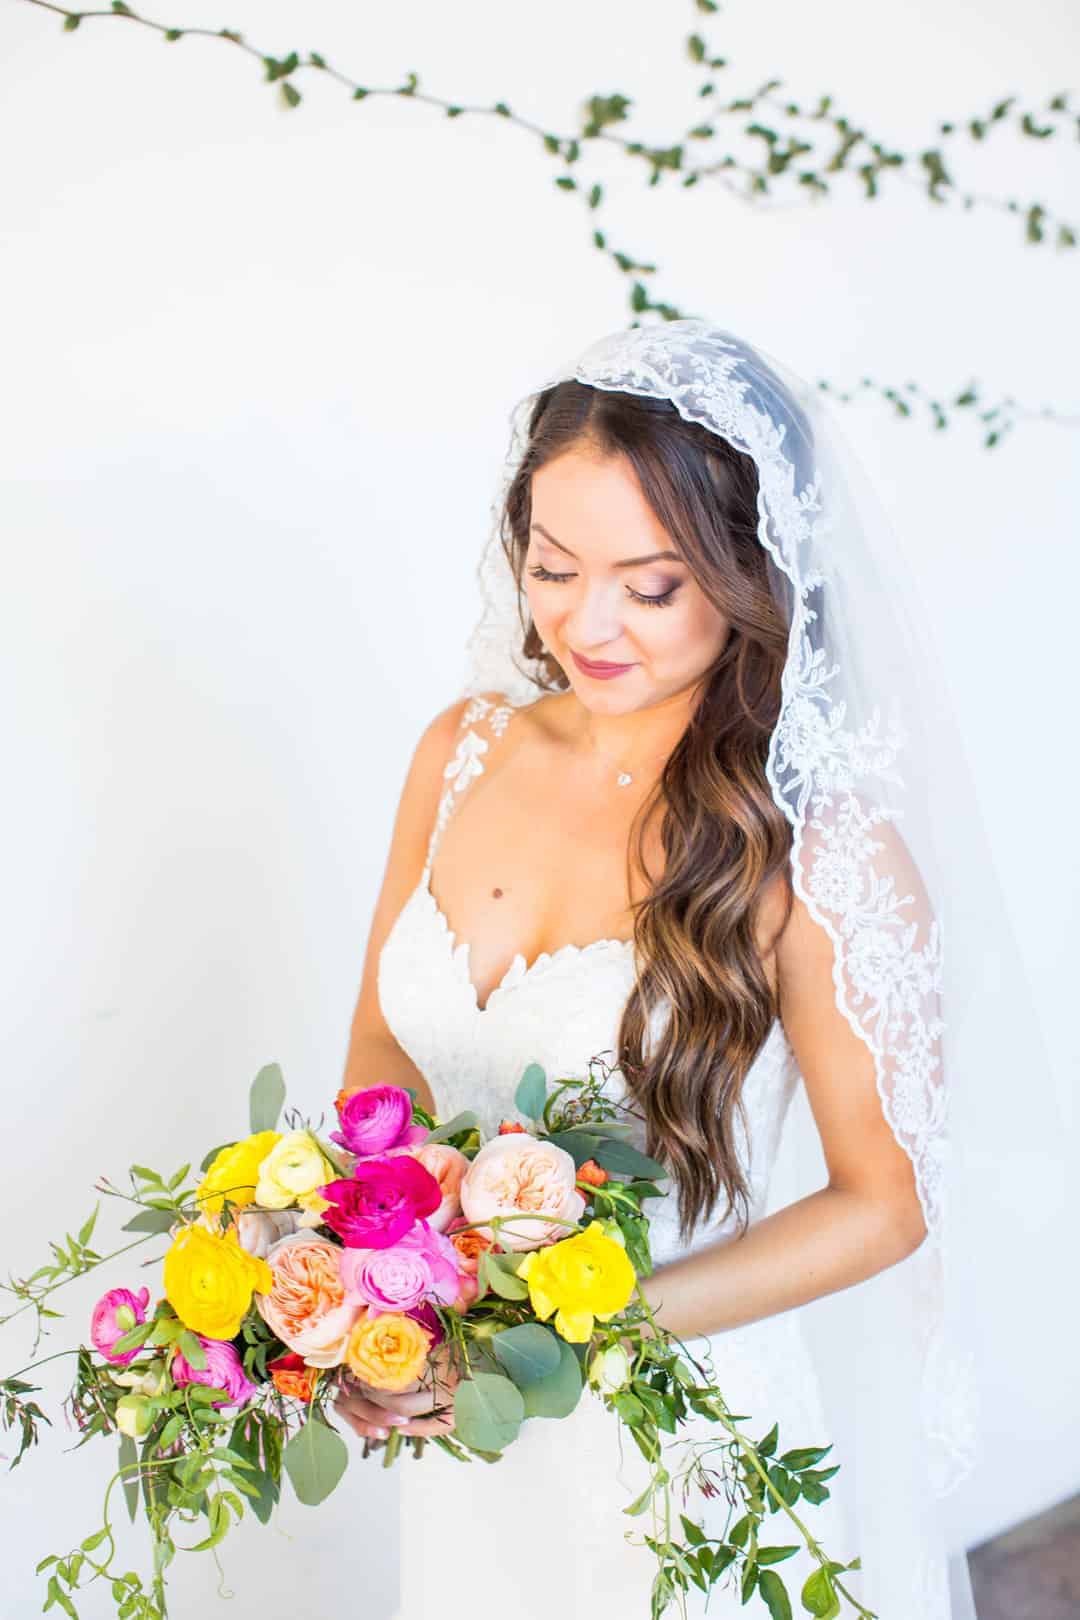 STYLISH DIA DE LOS MUERTOS WEDDING | Bespoke-Bride: Wedding Blog